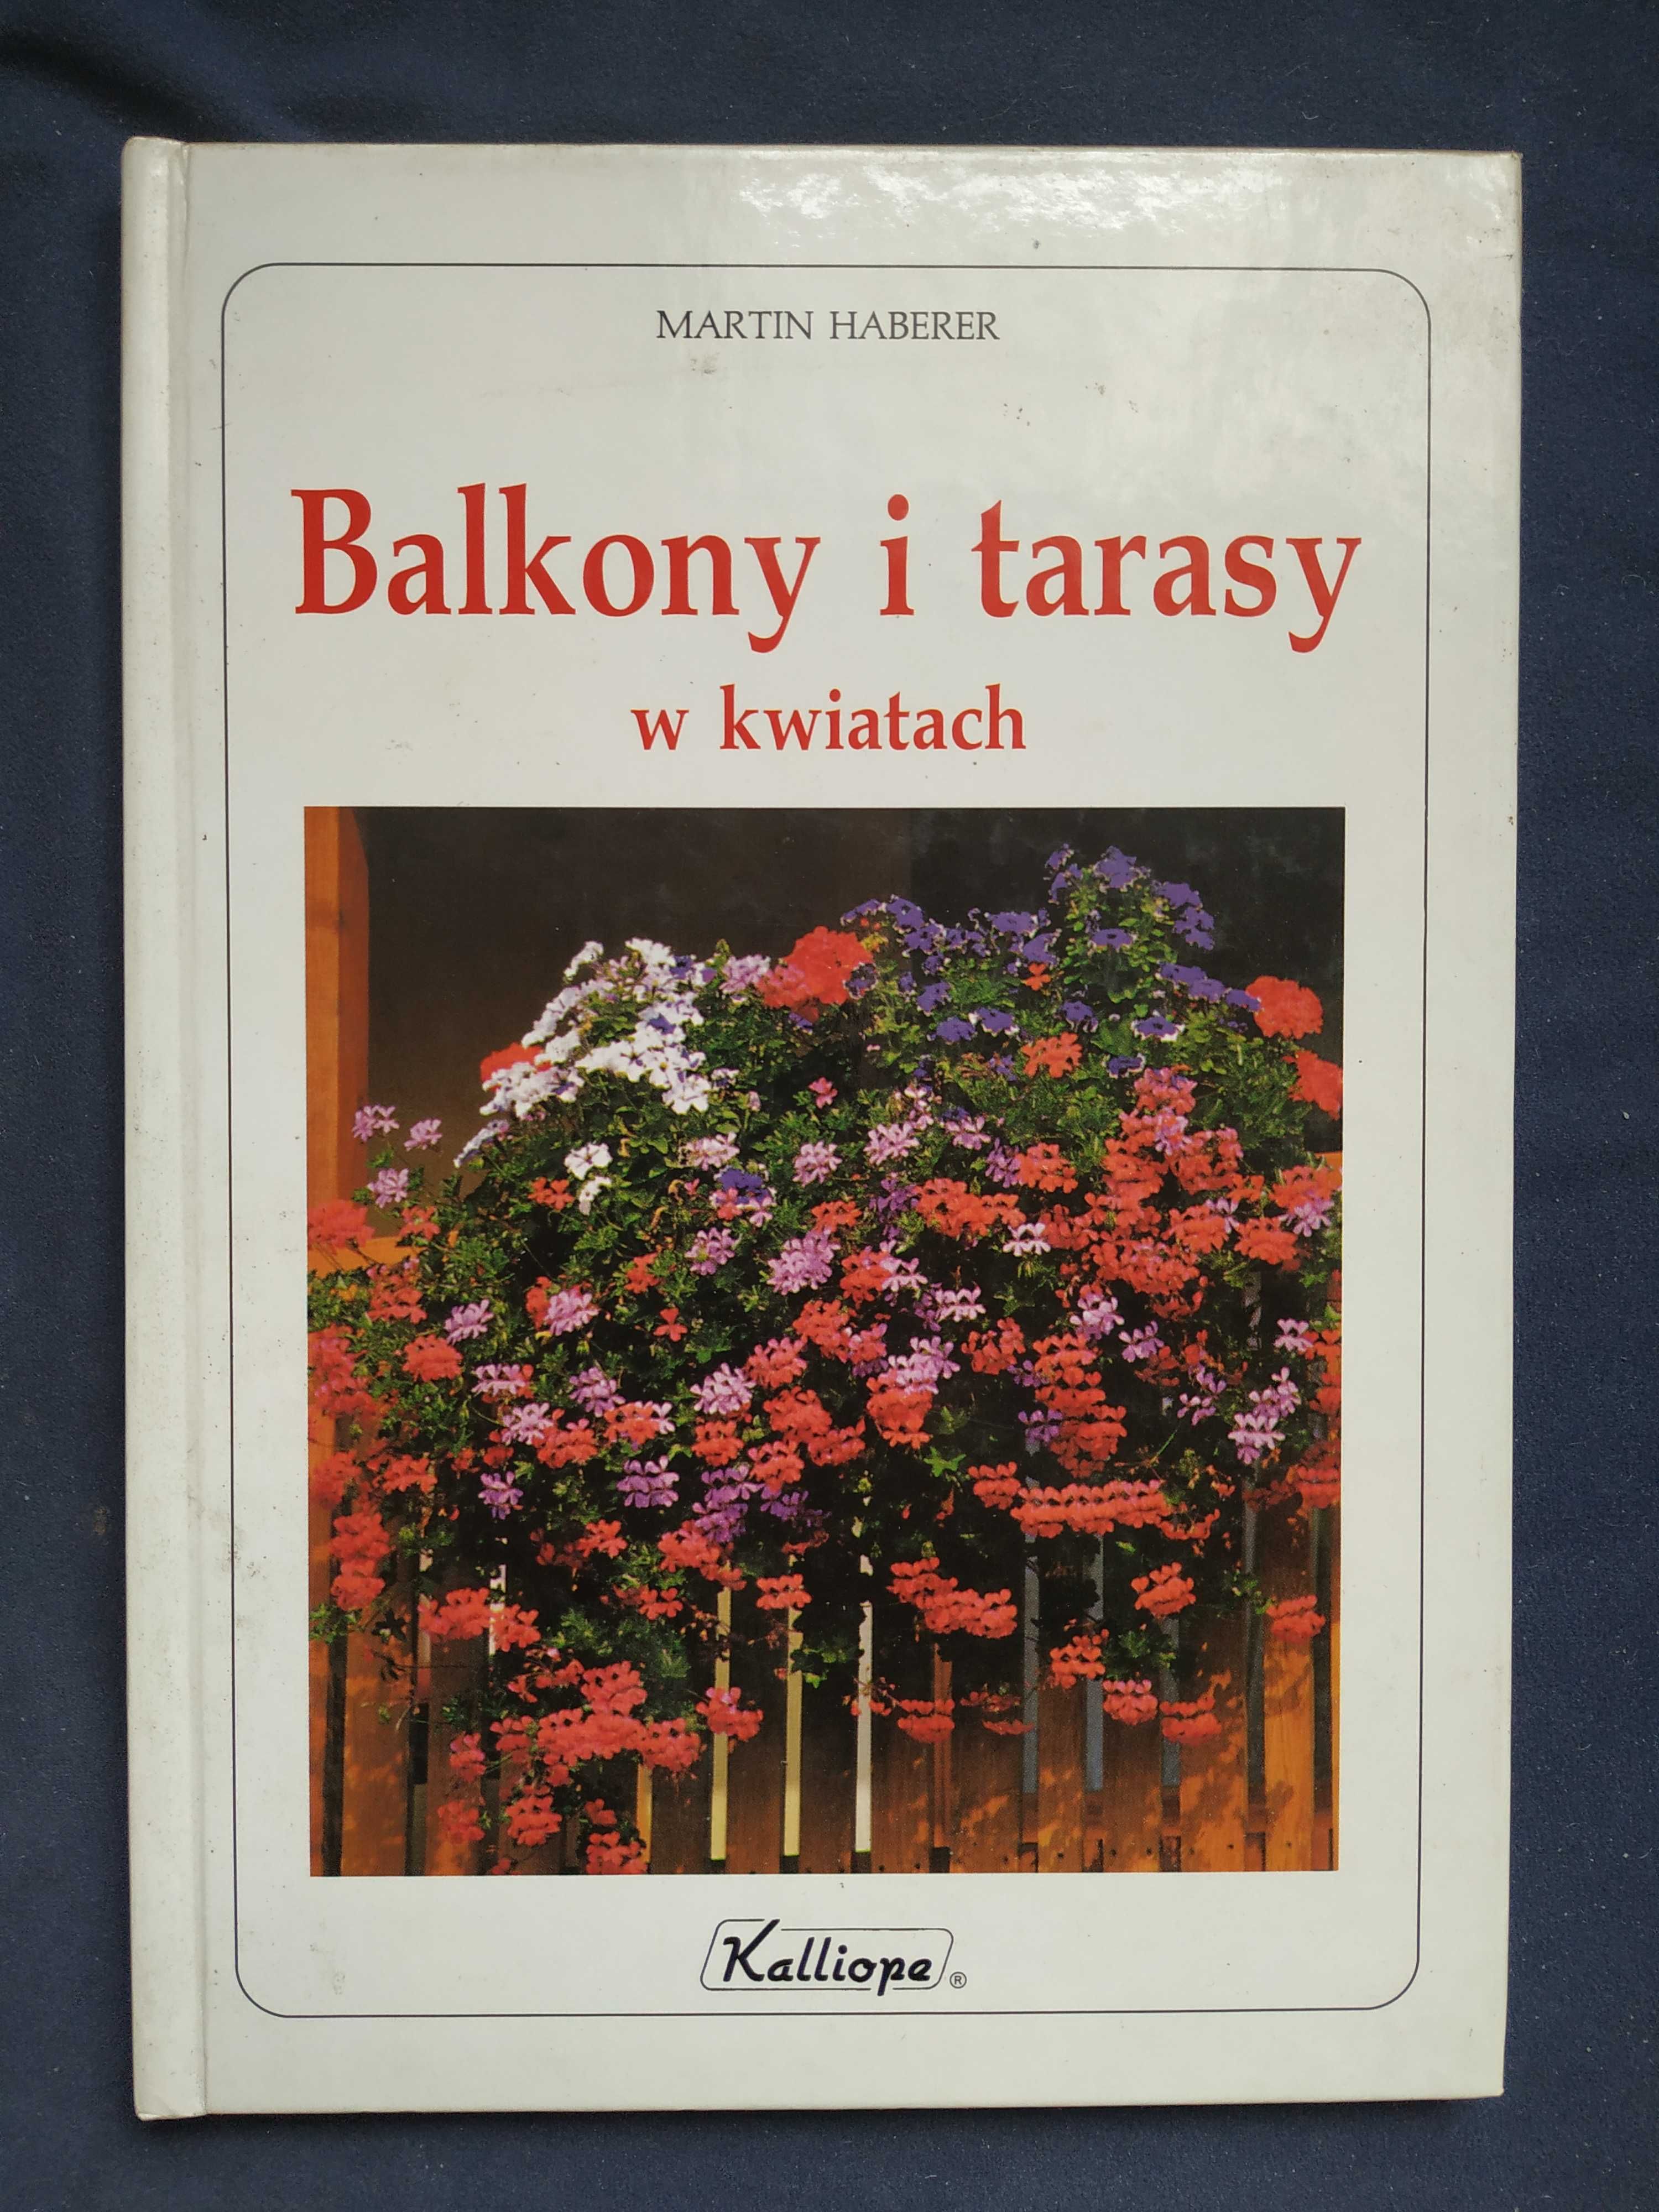 Balkony i tarasy w kwiatach (poradnik) – Martin Haberer